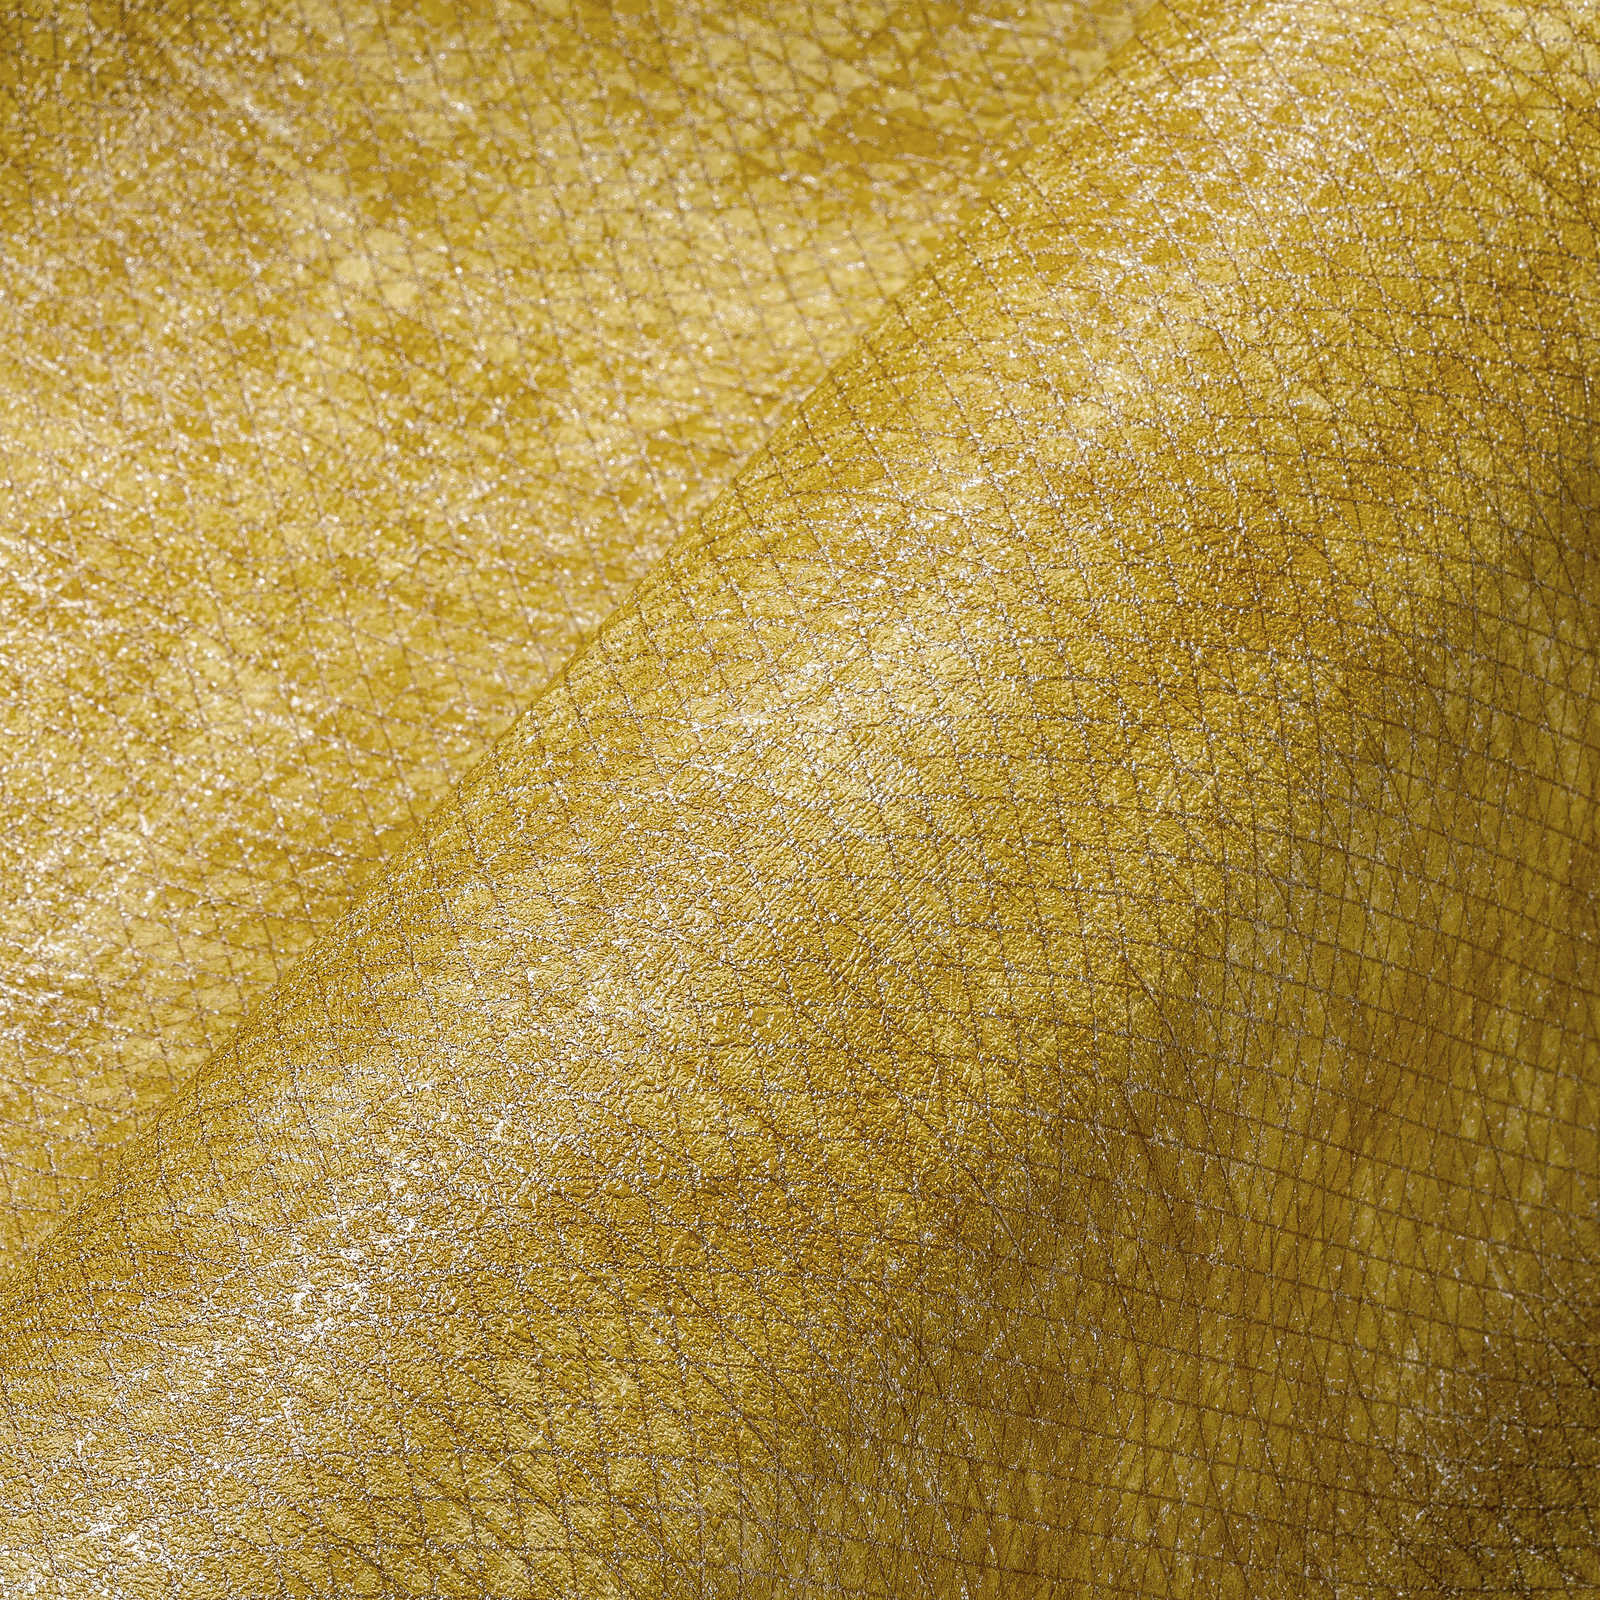             Behang mosterdgeel met metalen structuurpatroon - geel
        